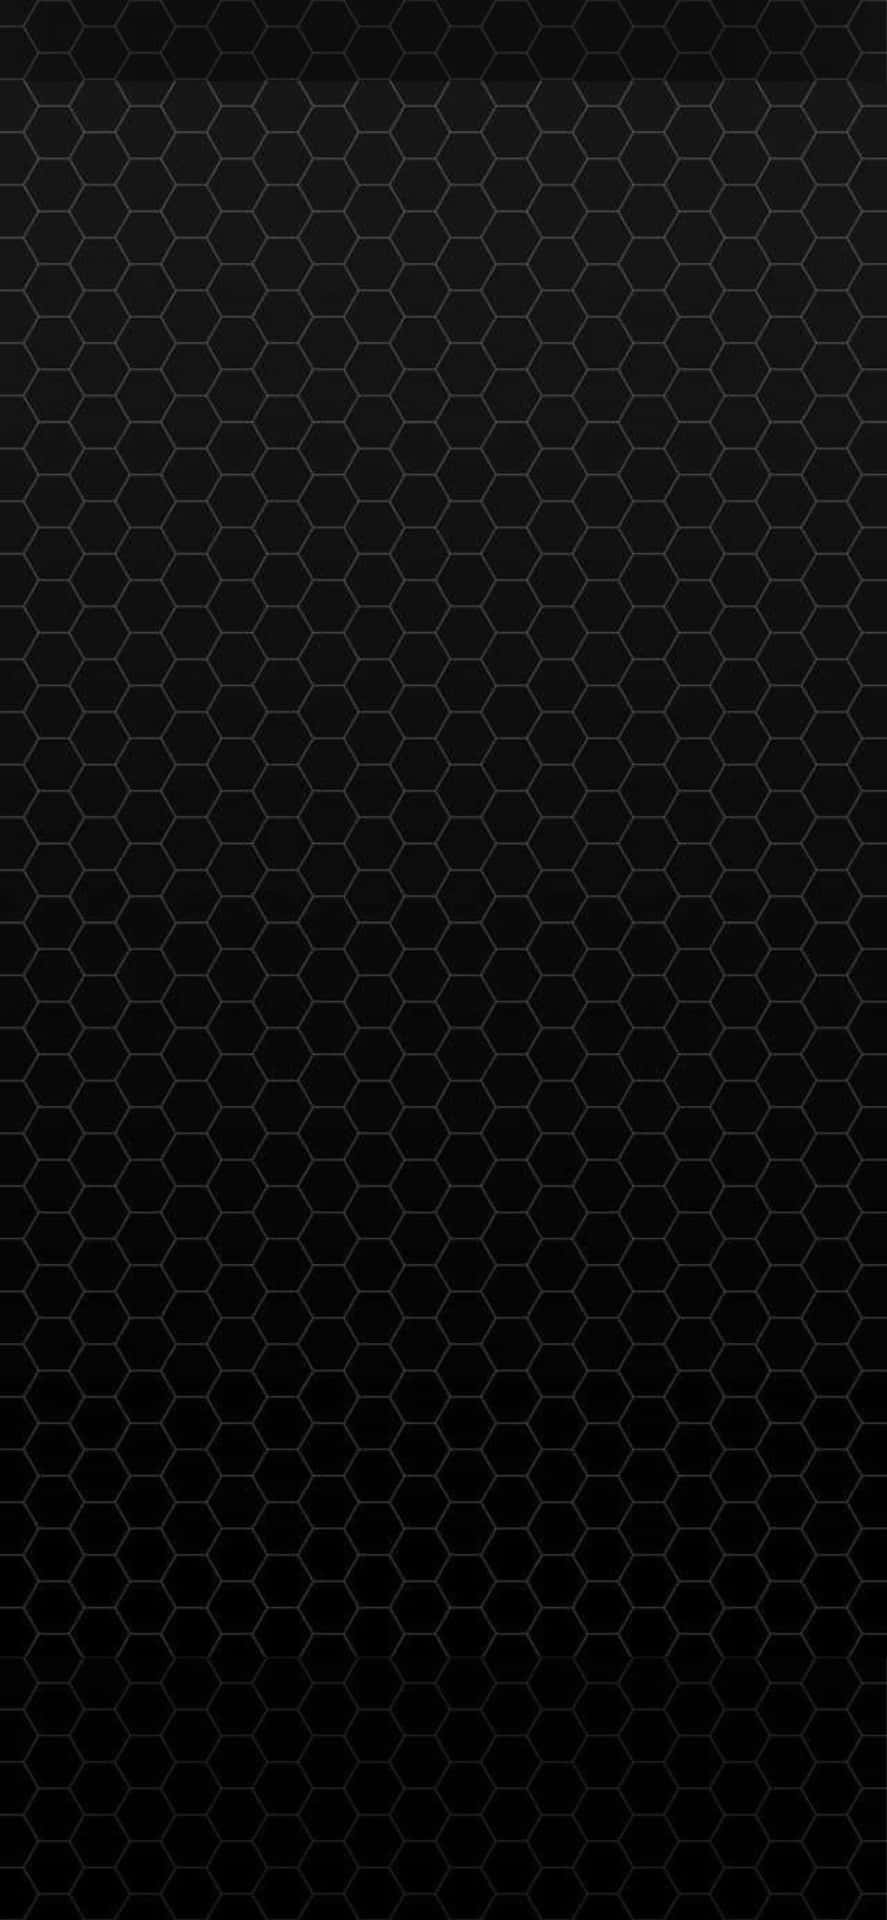 Einschwarzes Hexagonales Muster Auf Einem Schwarzen Hintergrund